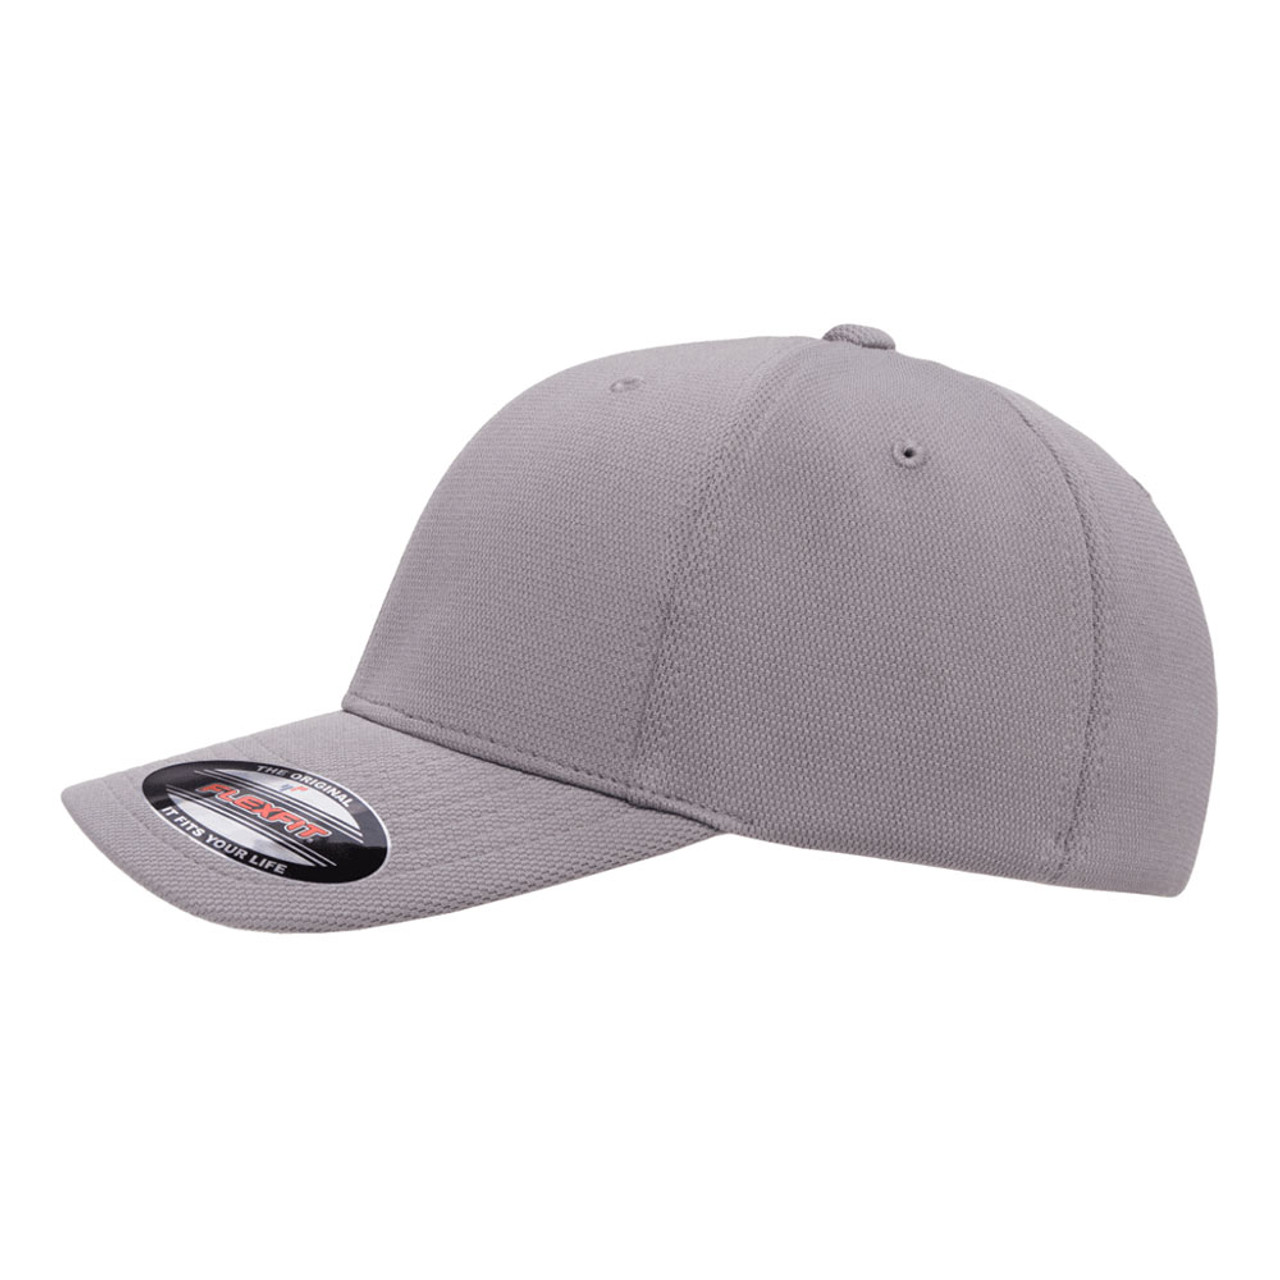 Flexfit Cool Performance Dry - Jac Cap | The Hat Dozen & One